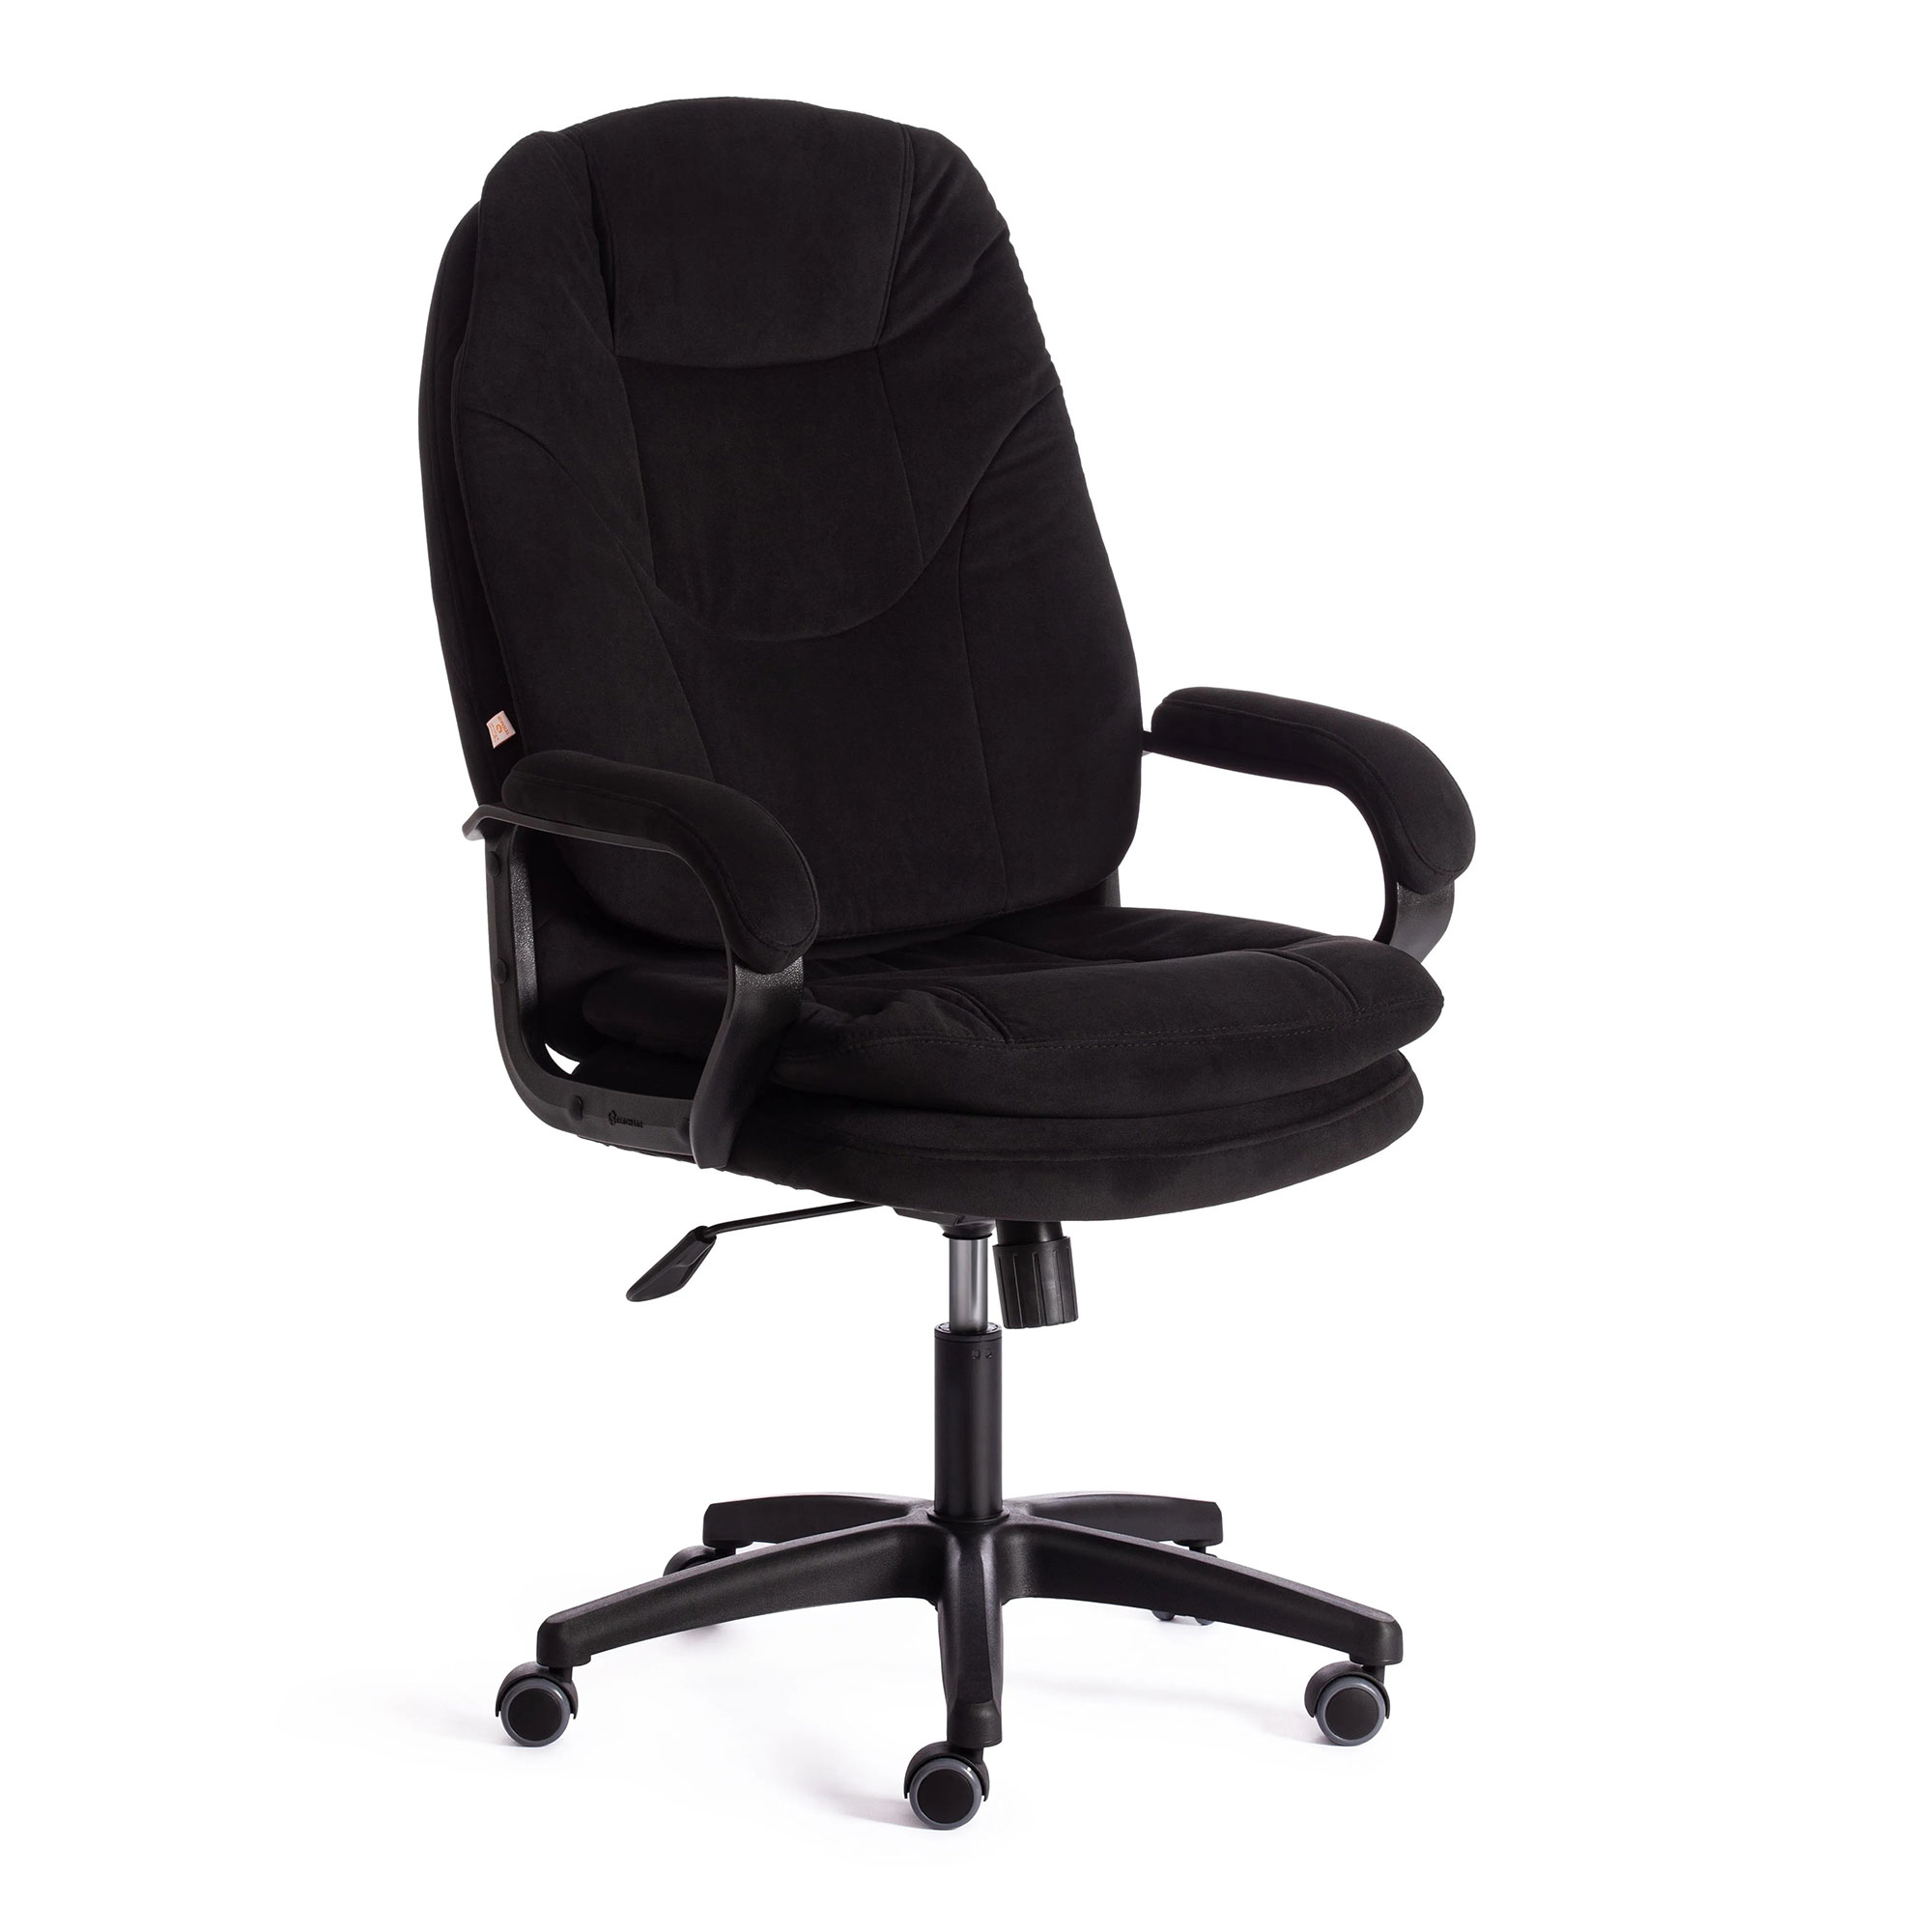 Компьютерное кресло TC Comfort чёрное 66х46х133 см (19388) компьютерное кресло tc bergamo чёрное 67х47х140 см 19370